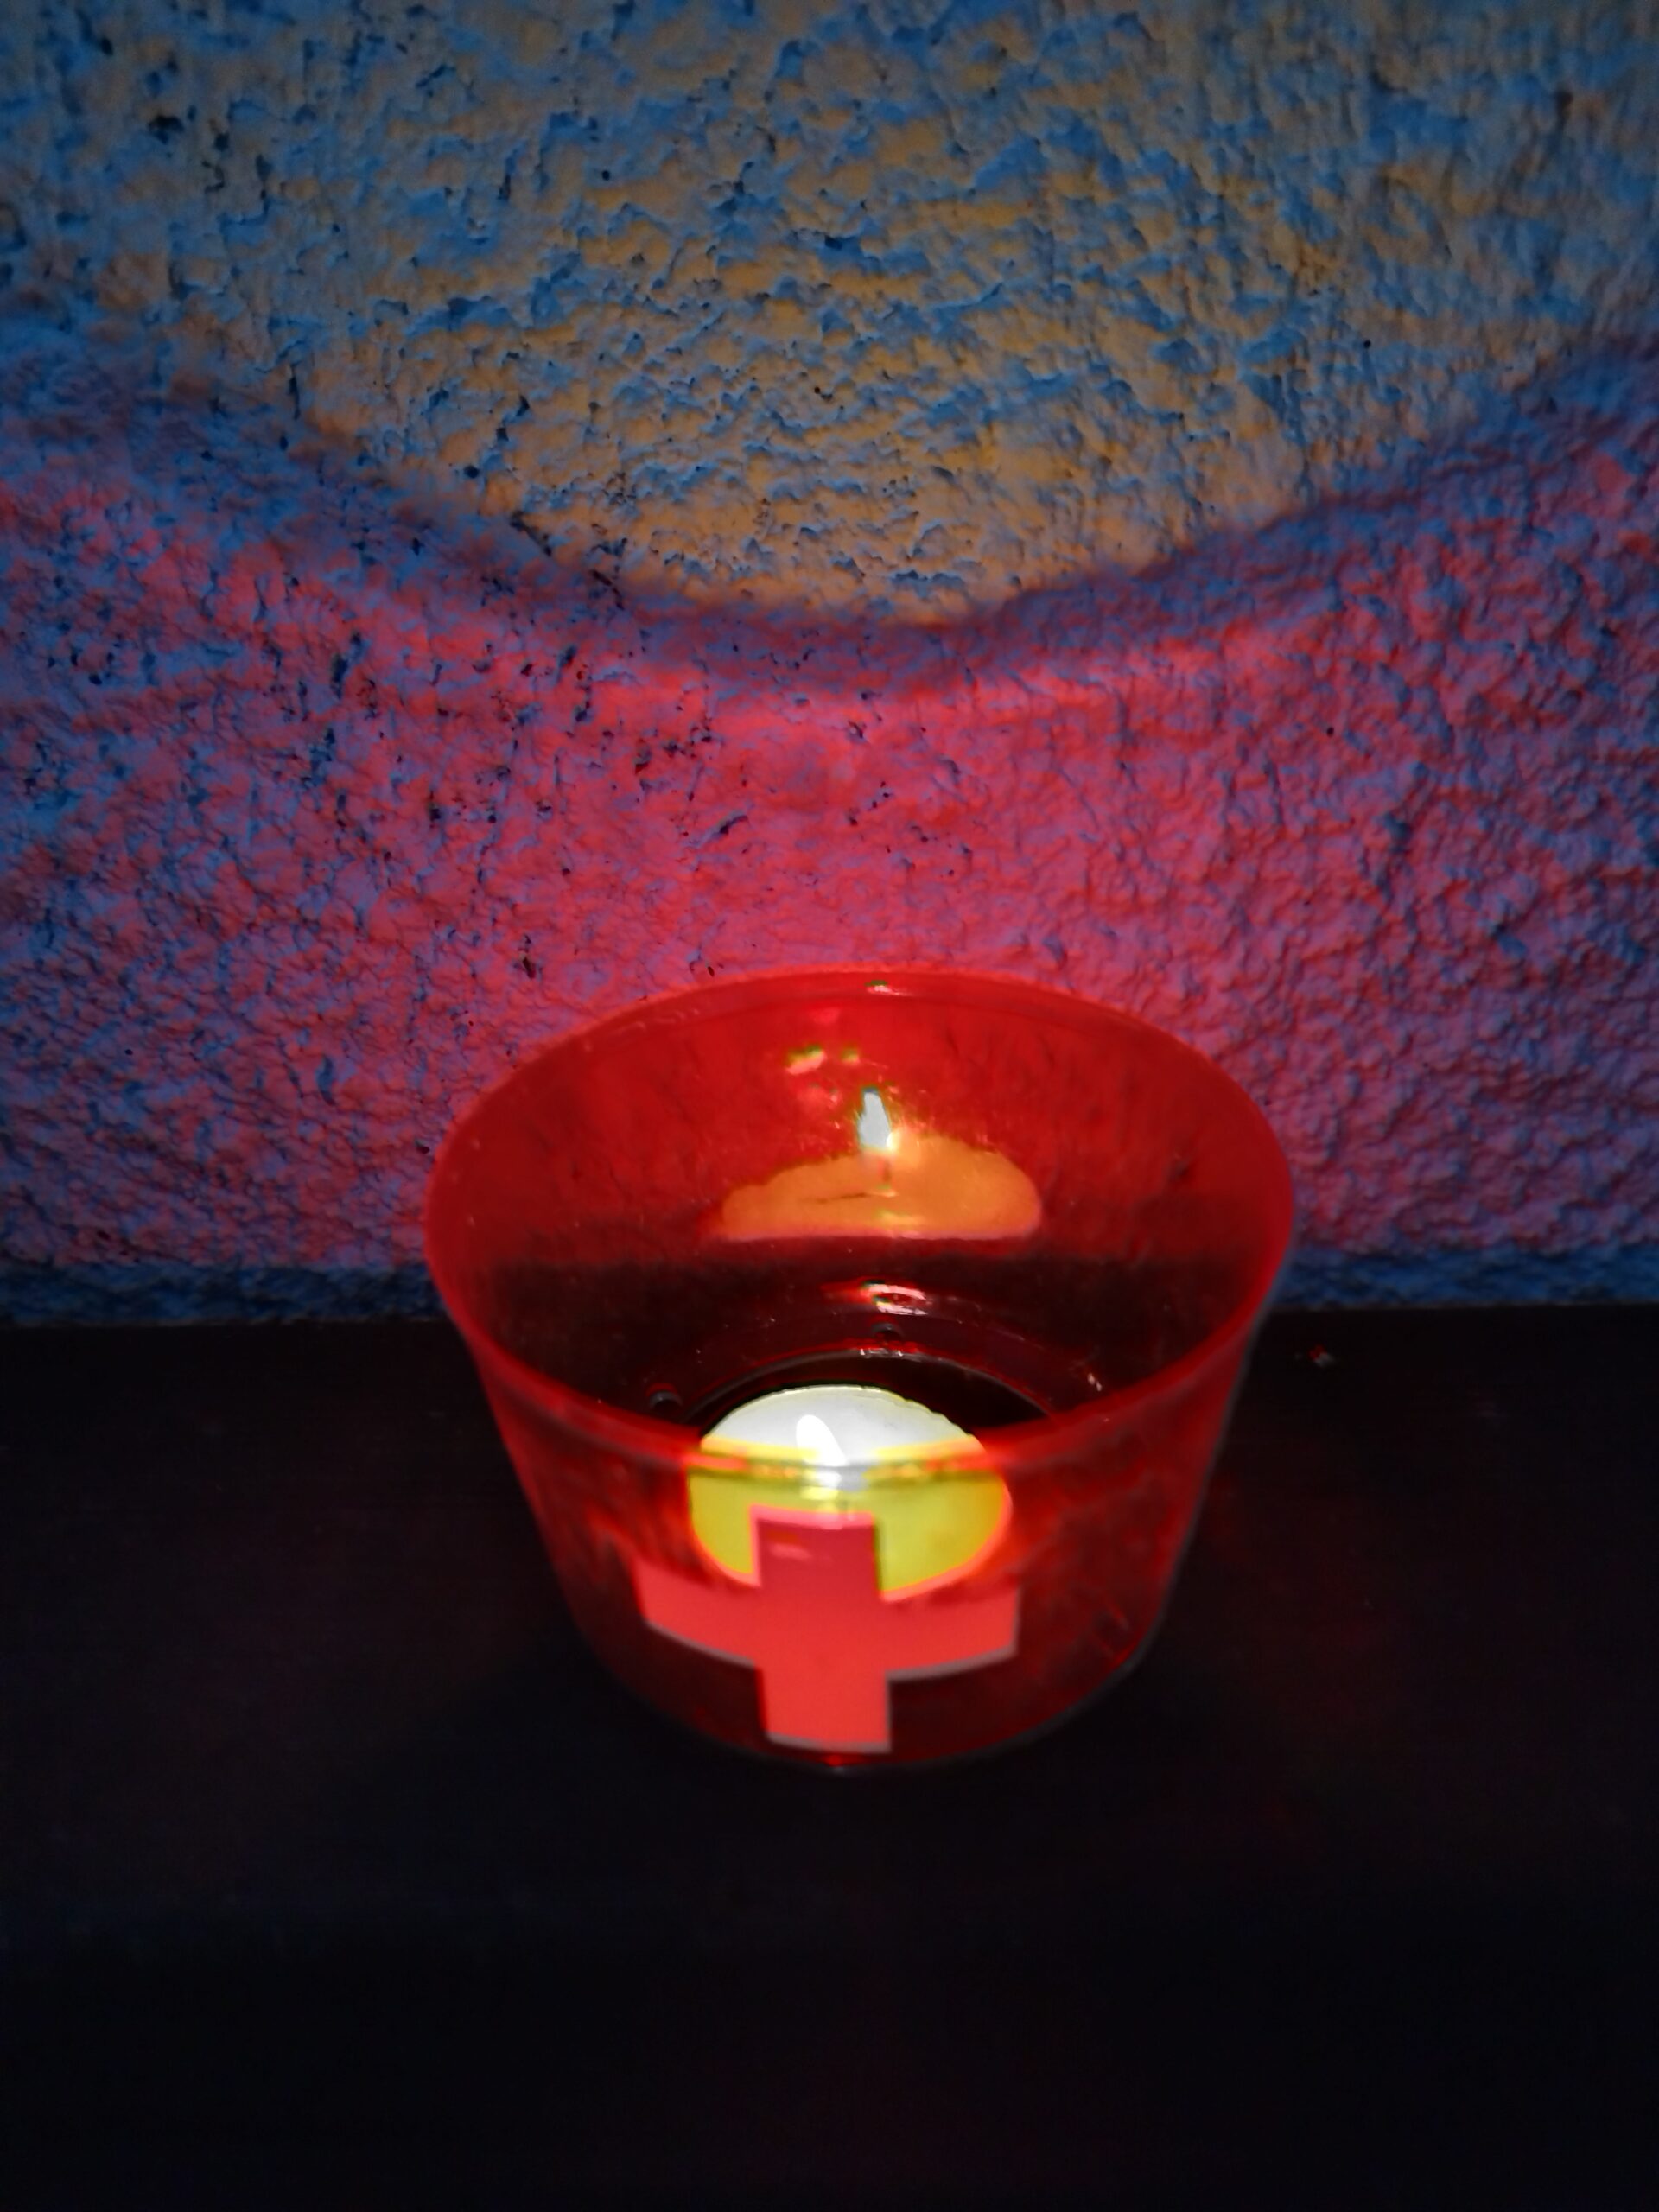 Nationalfeiertag 1. Agustfeier im honora zen kloster in der schweiz | honora zen monastery